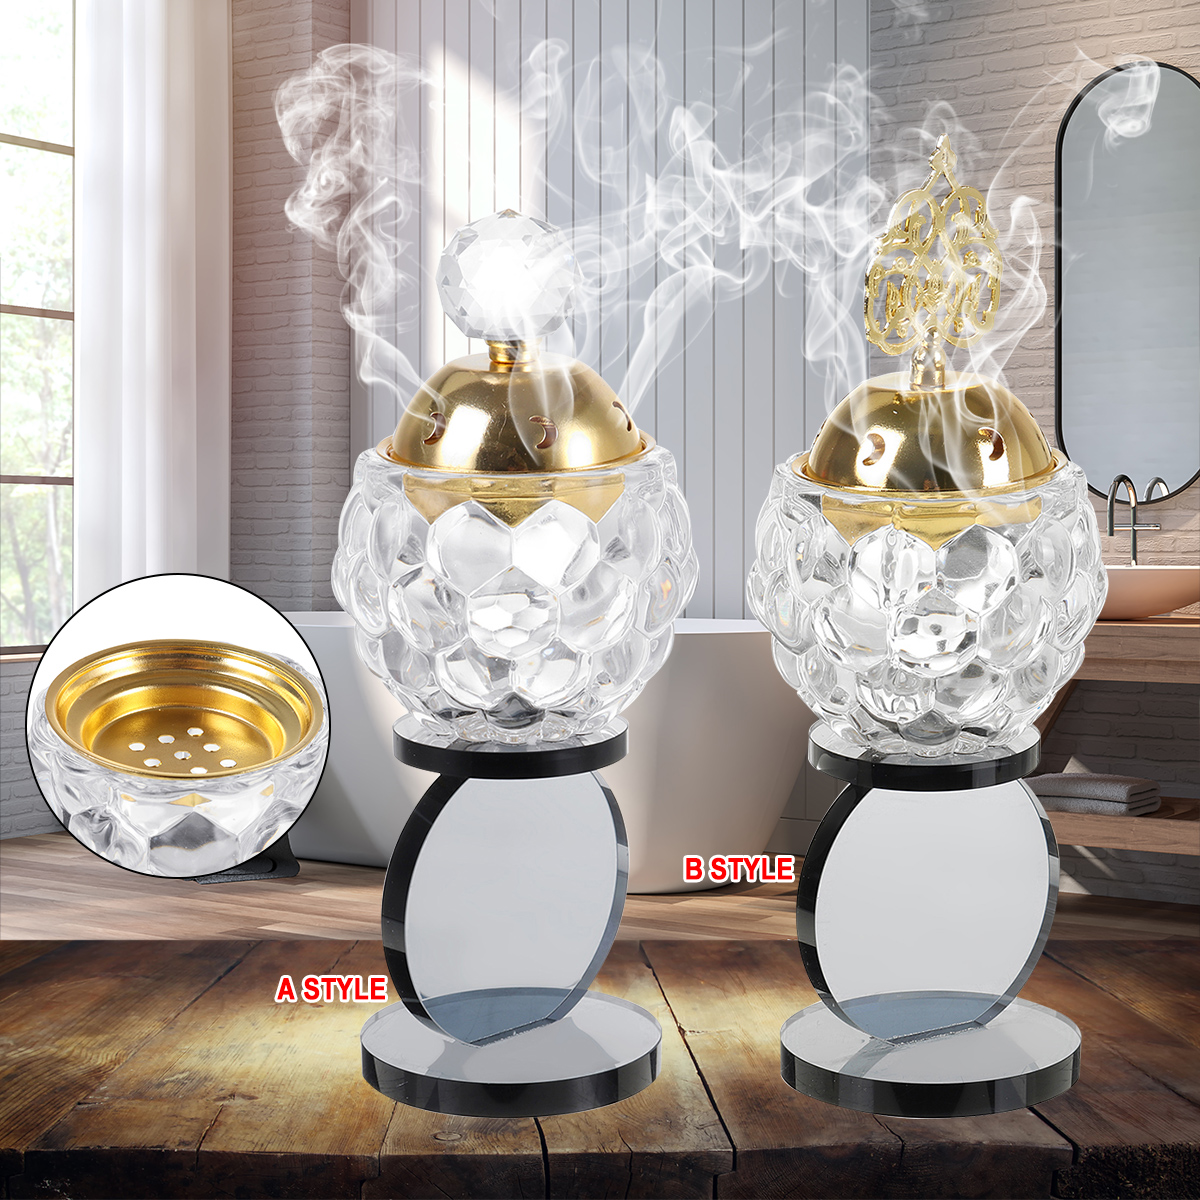 Crystal-Incense-Burner-Plating-Metal-Polishing-Incense-Burner-Traditional-For-Home-Office-Desktop-De-1791853-2